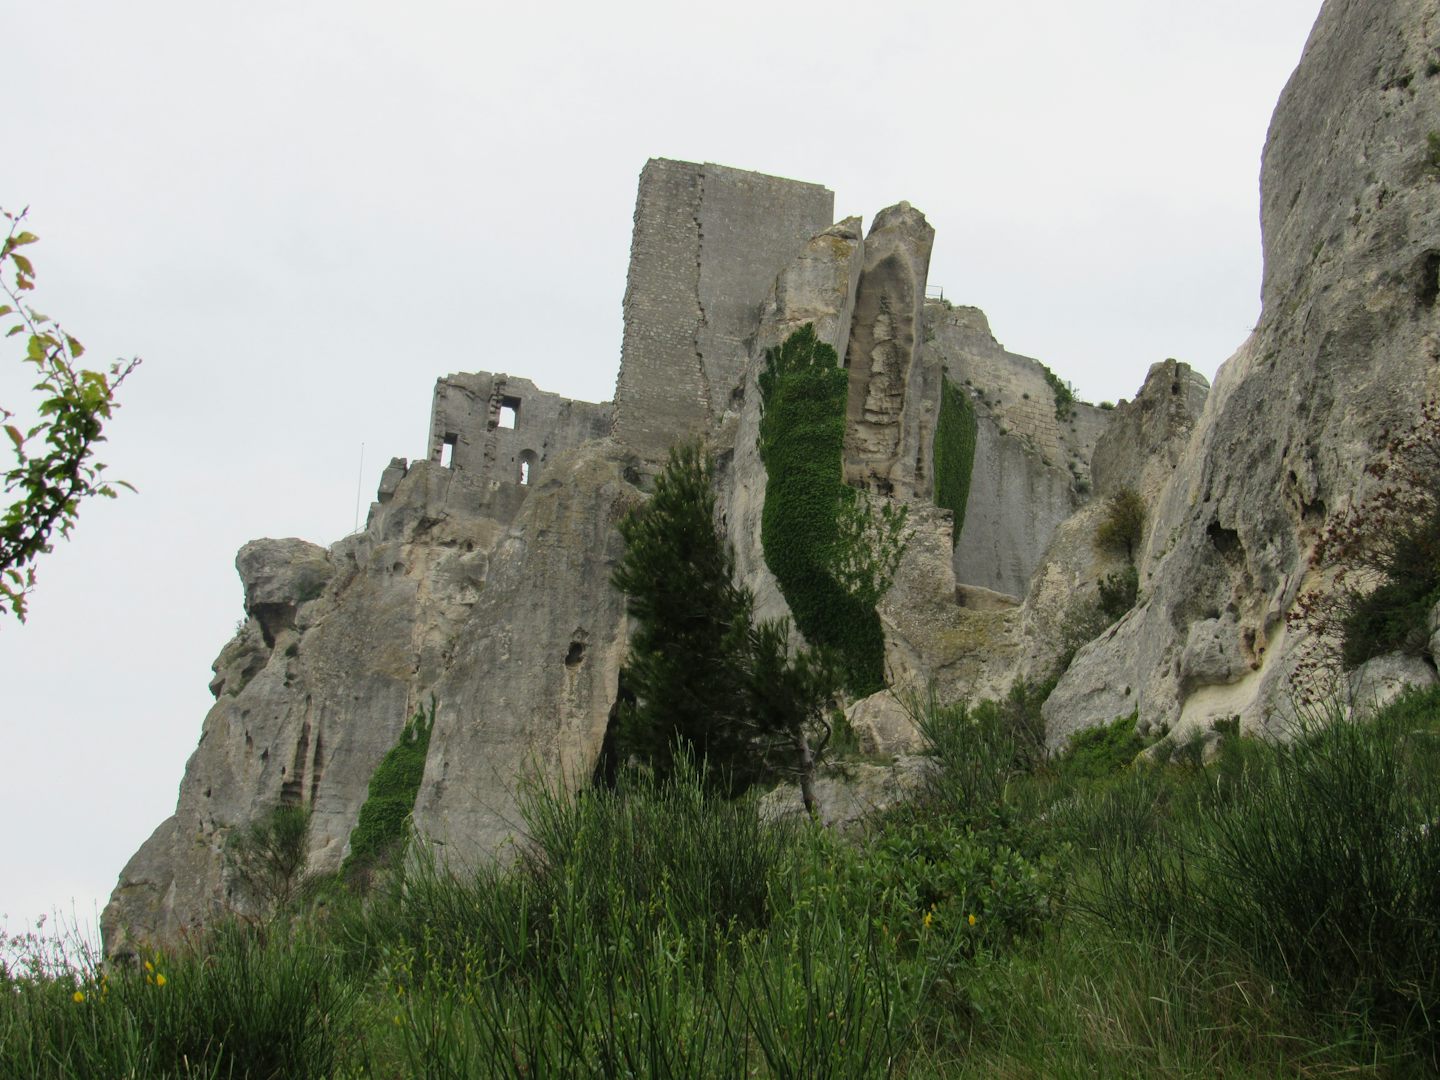 Castle ruins at Les Baux